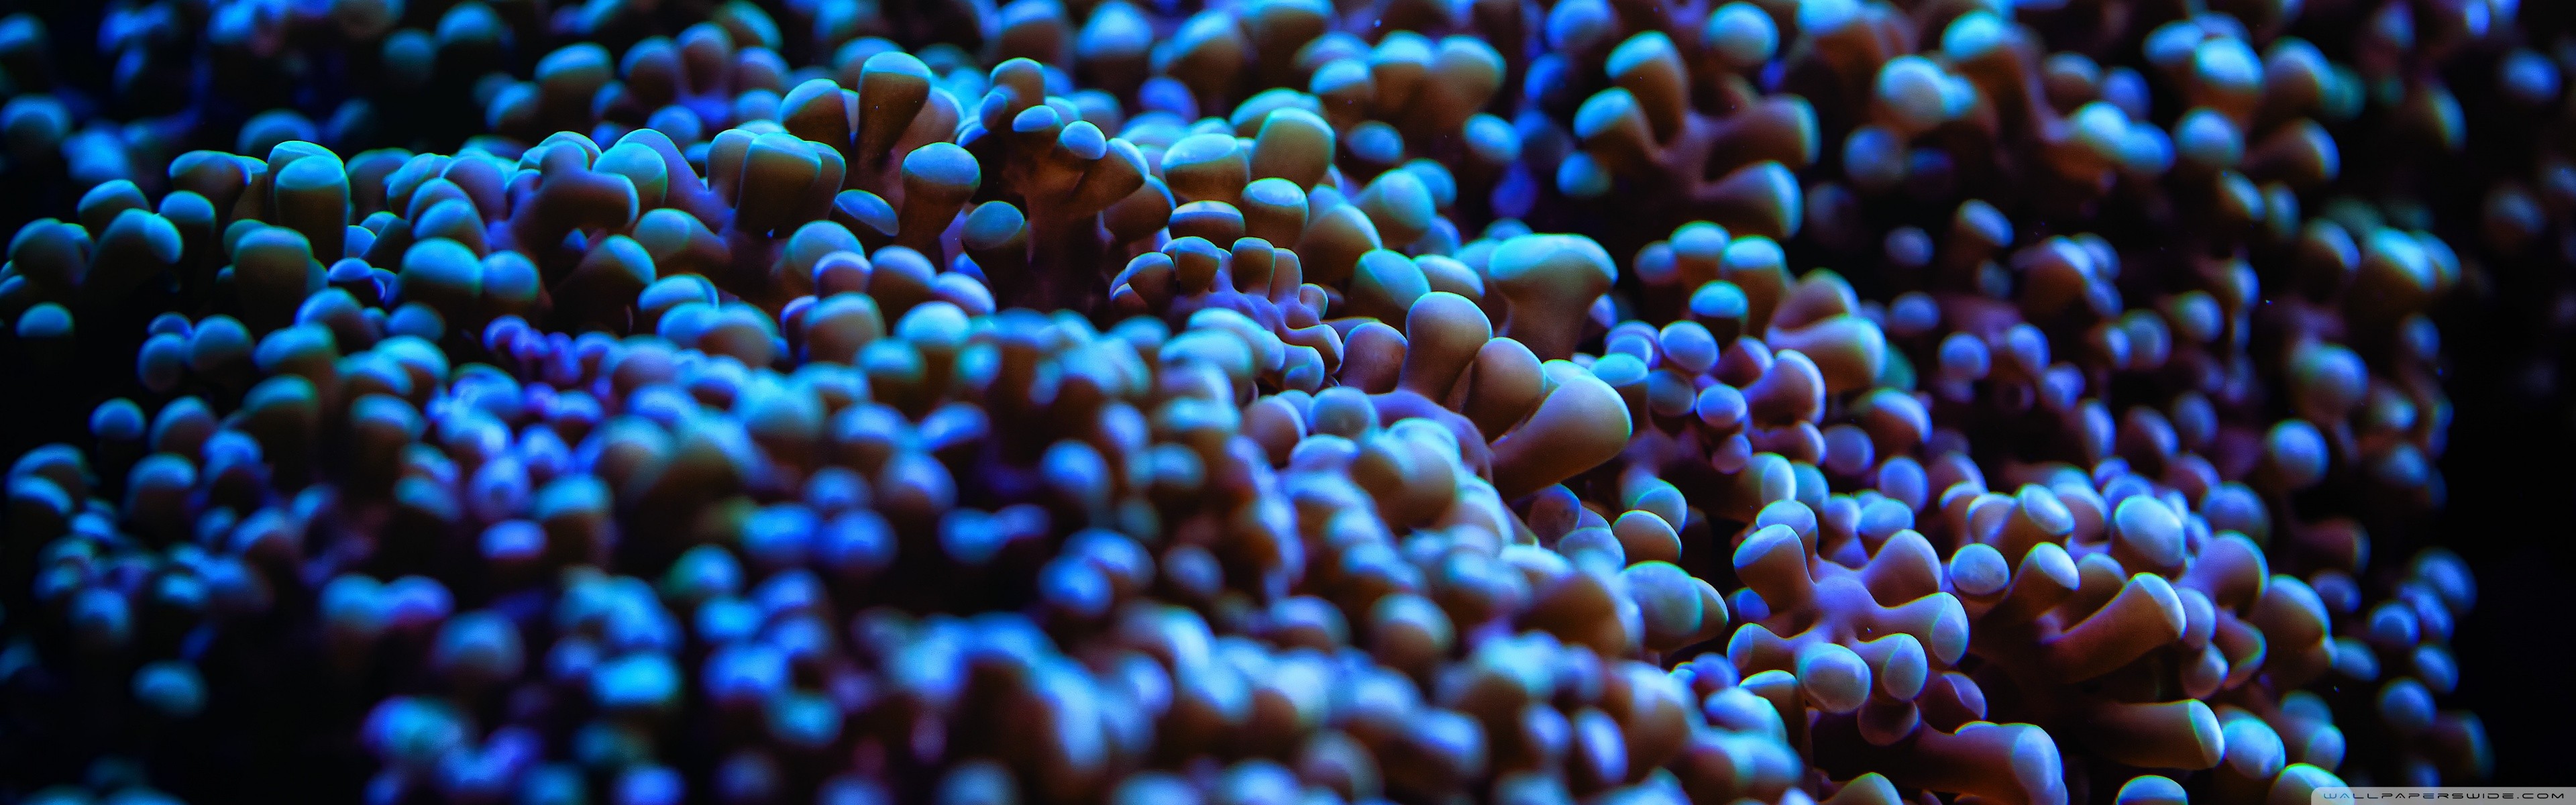 General 3840x1200 nature sea anemones closeup watermarked multiple display in water underwater